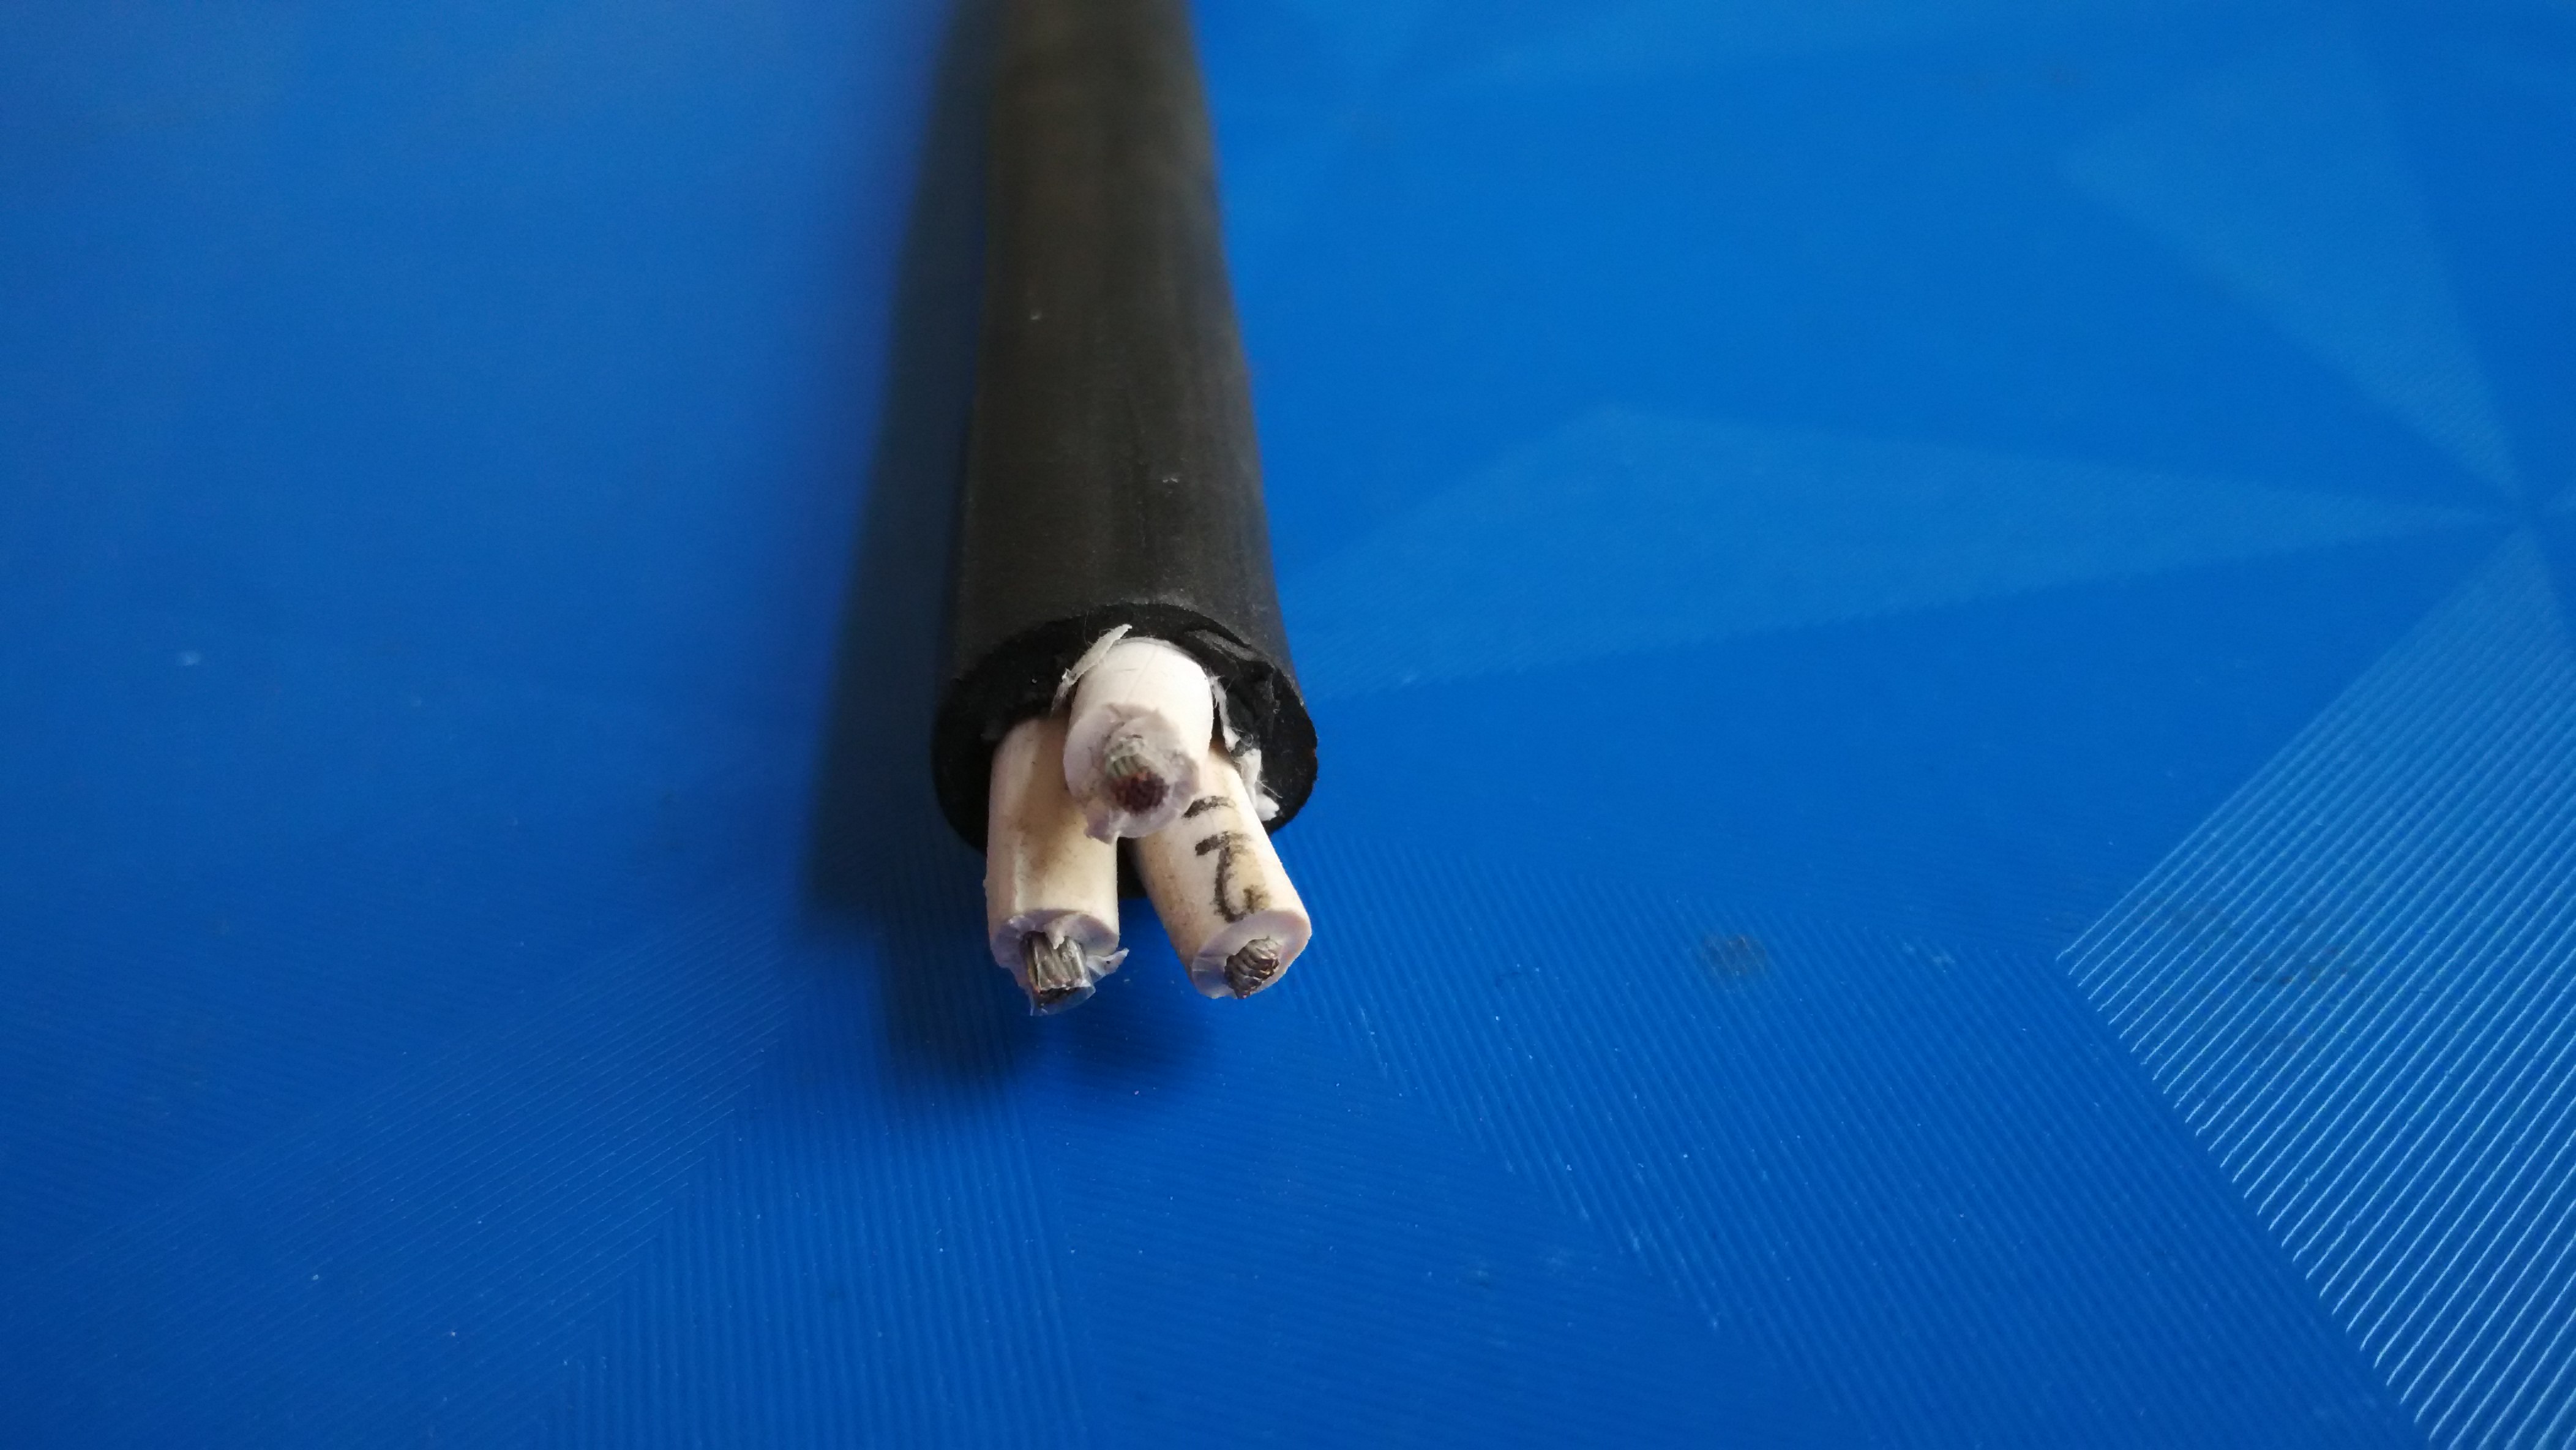 KGG-19*1.5硅橡胶电缆